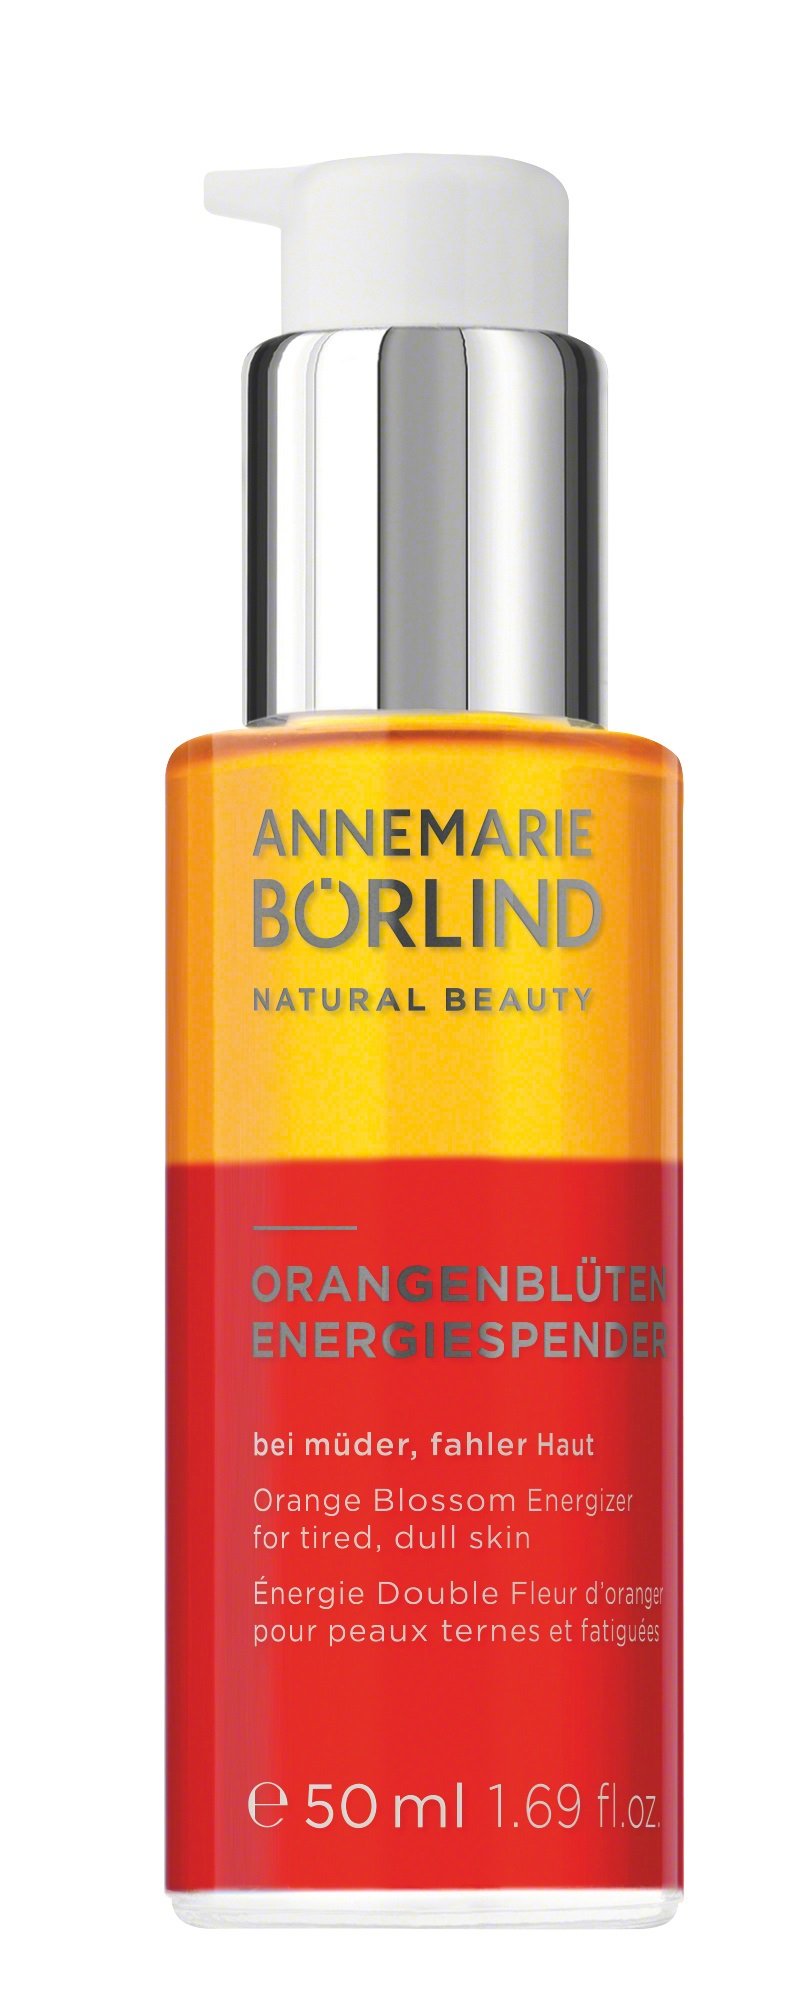 Annemarie Börlind - Orange Blossom Energizer 50 ml